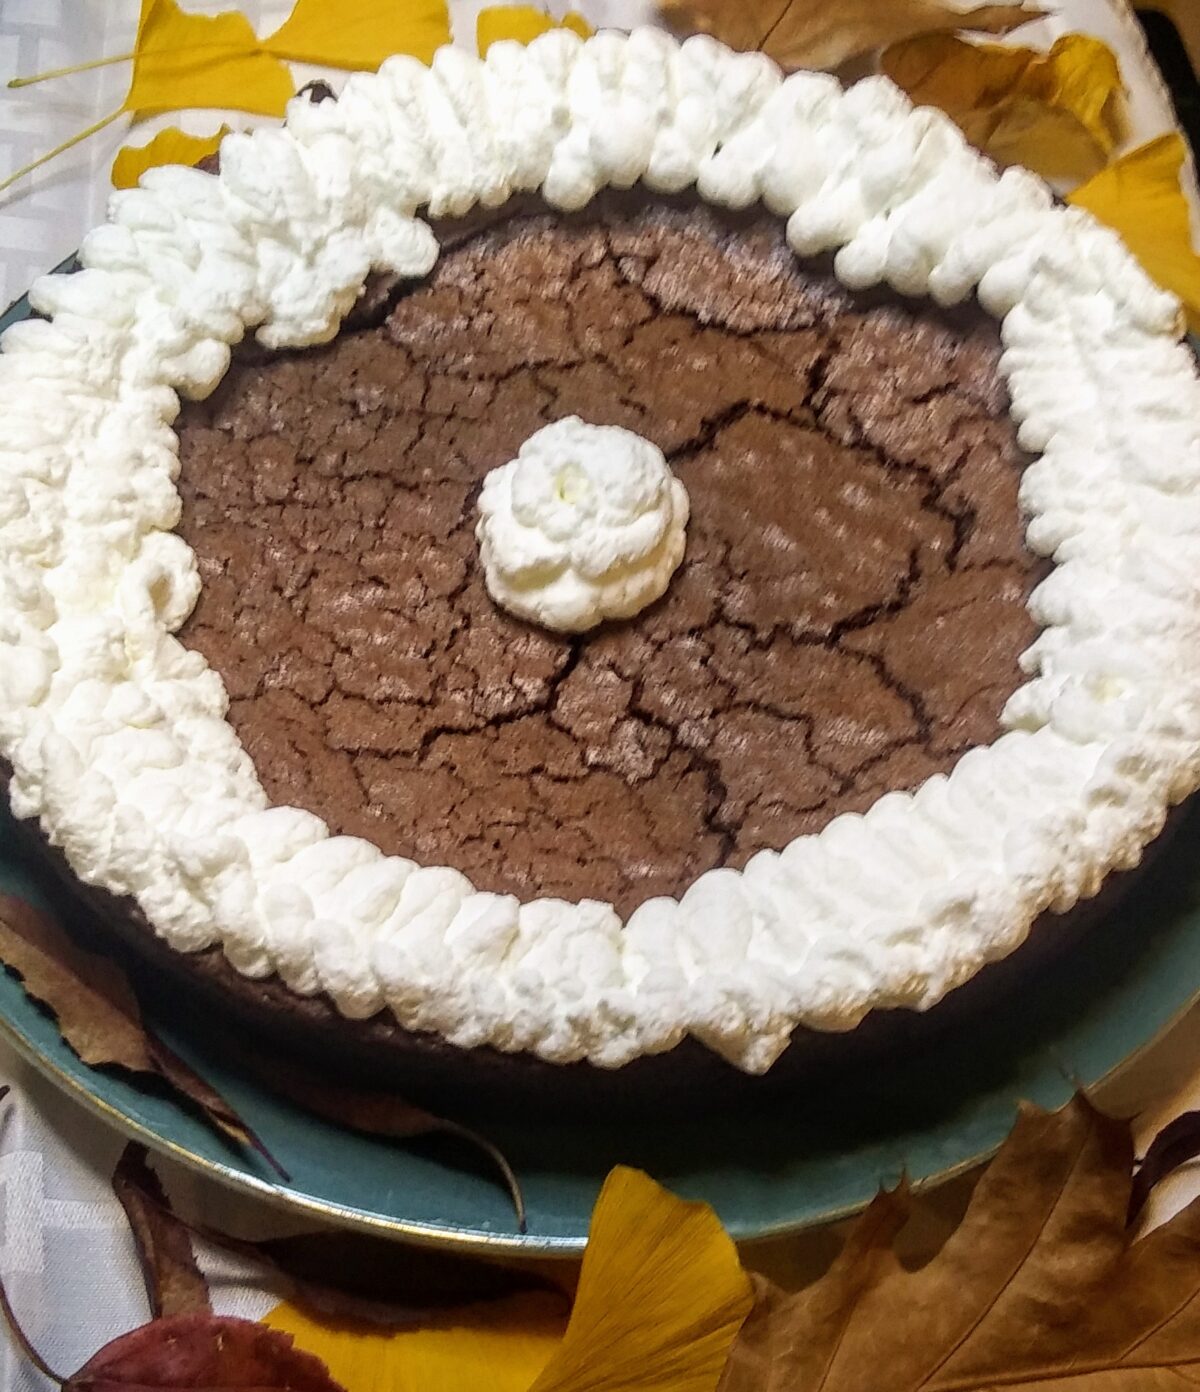 Swedish Sticky Chocolate Cake (Kladdkaka)